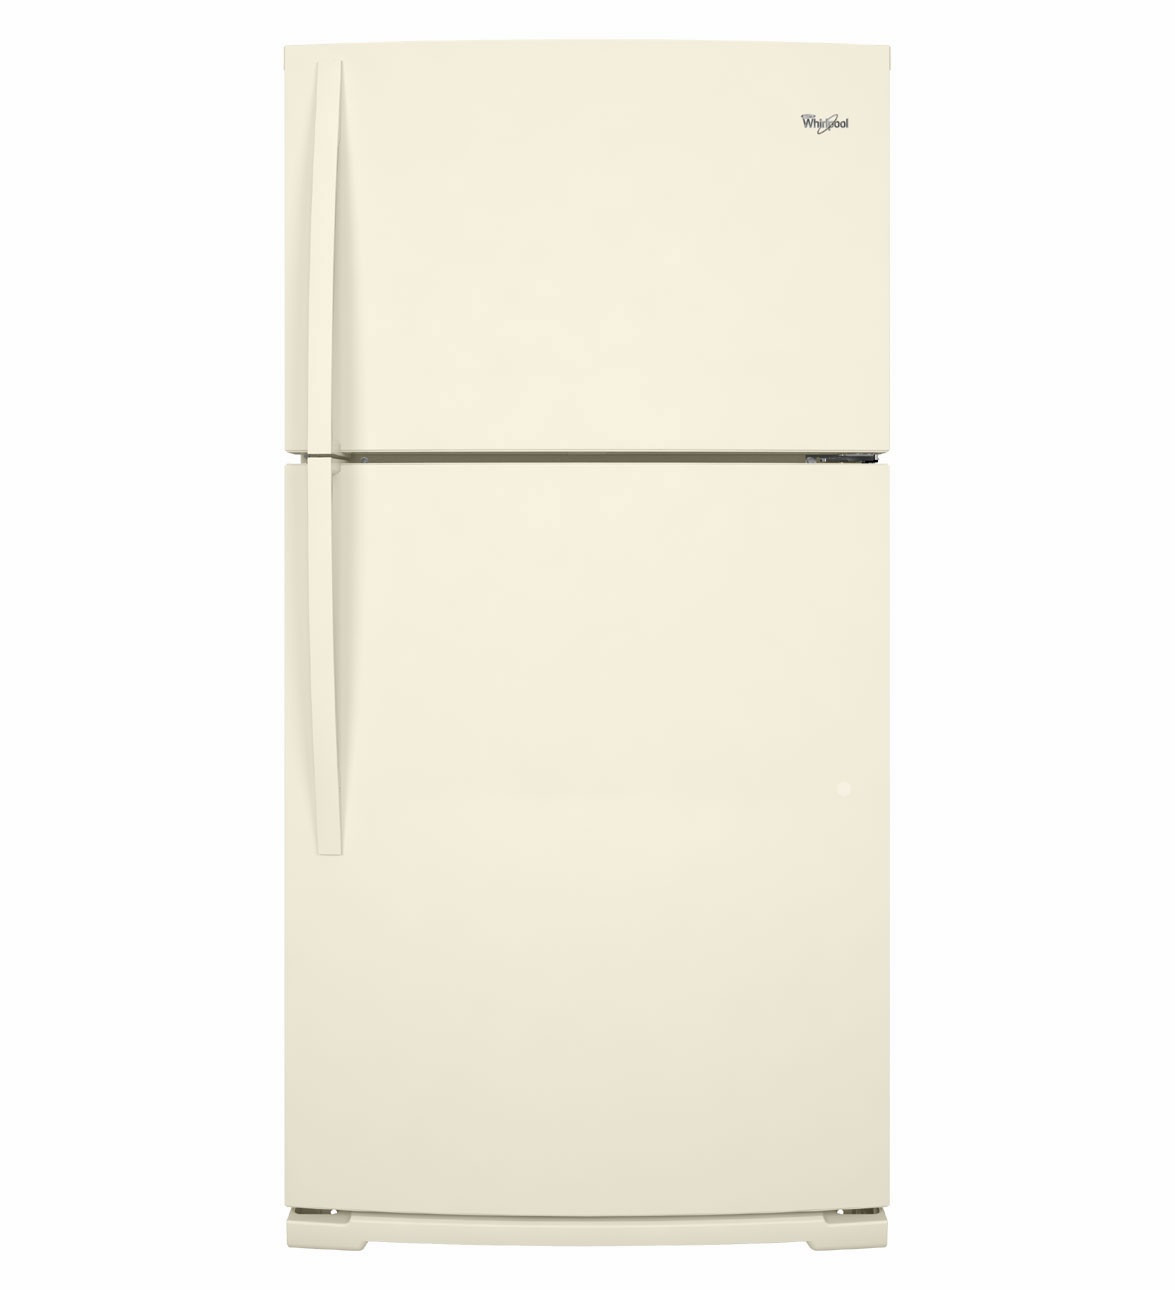 Bisque Refrigerator Bottom Freezer
 Whirlpool Refrigerator Brand Bisque WRT311SFYT Refrigerator